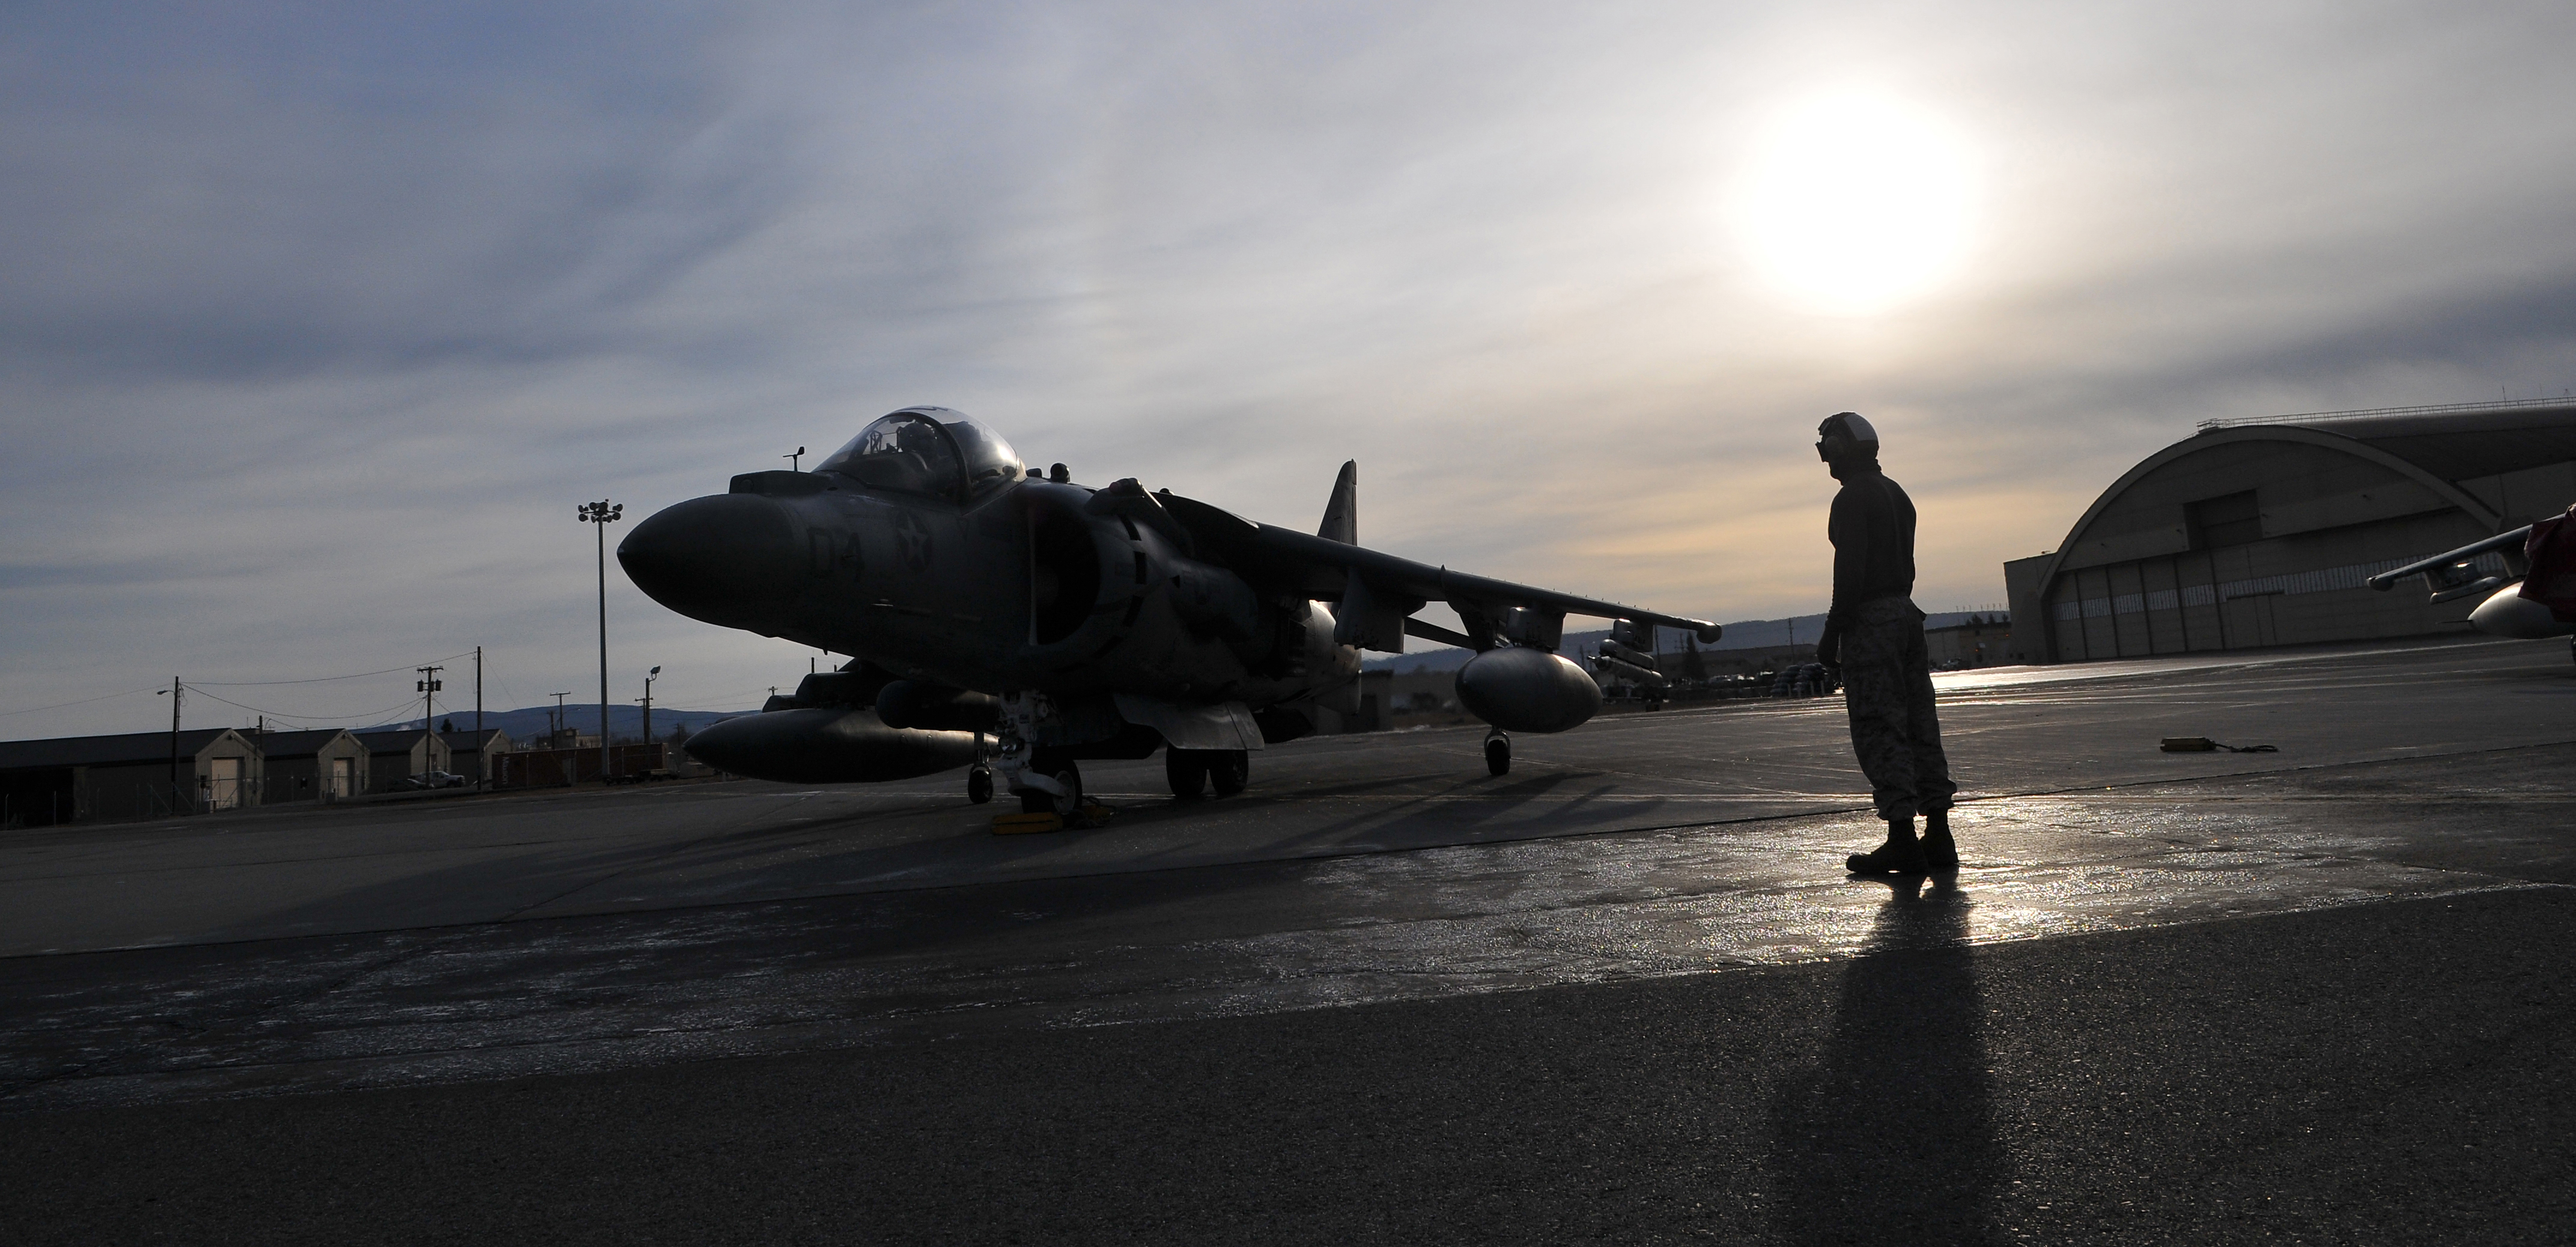 AV-8B Harrier ready for takeoff at Eielson Air Force Base 16 Apr 2010.jpg.